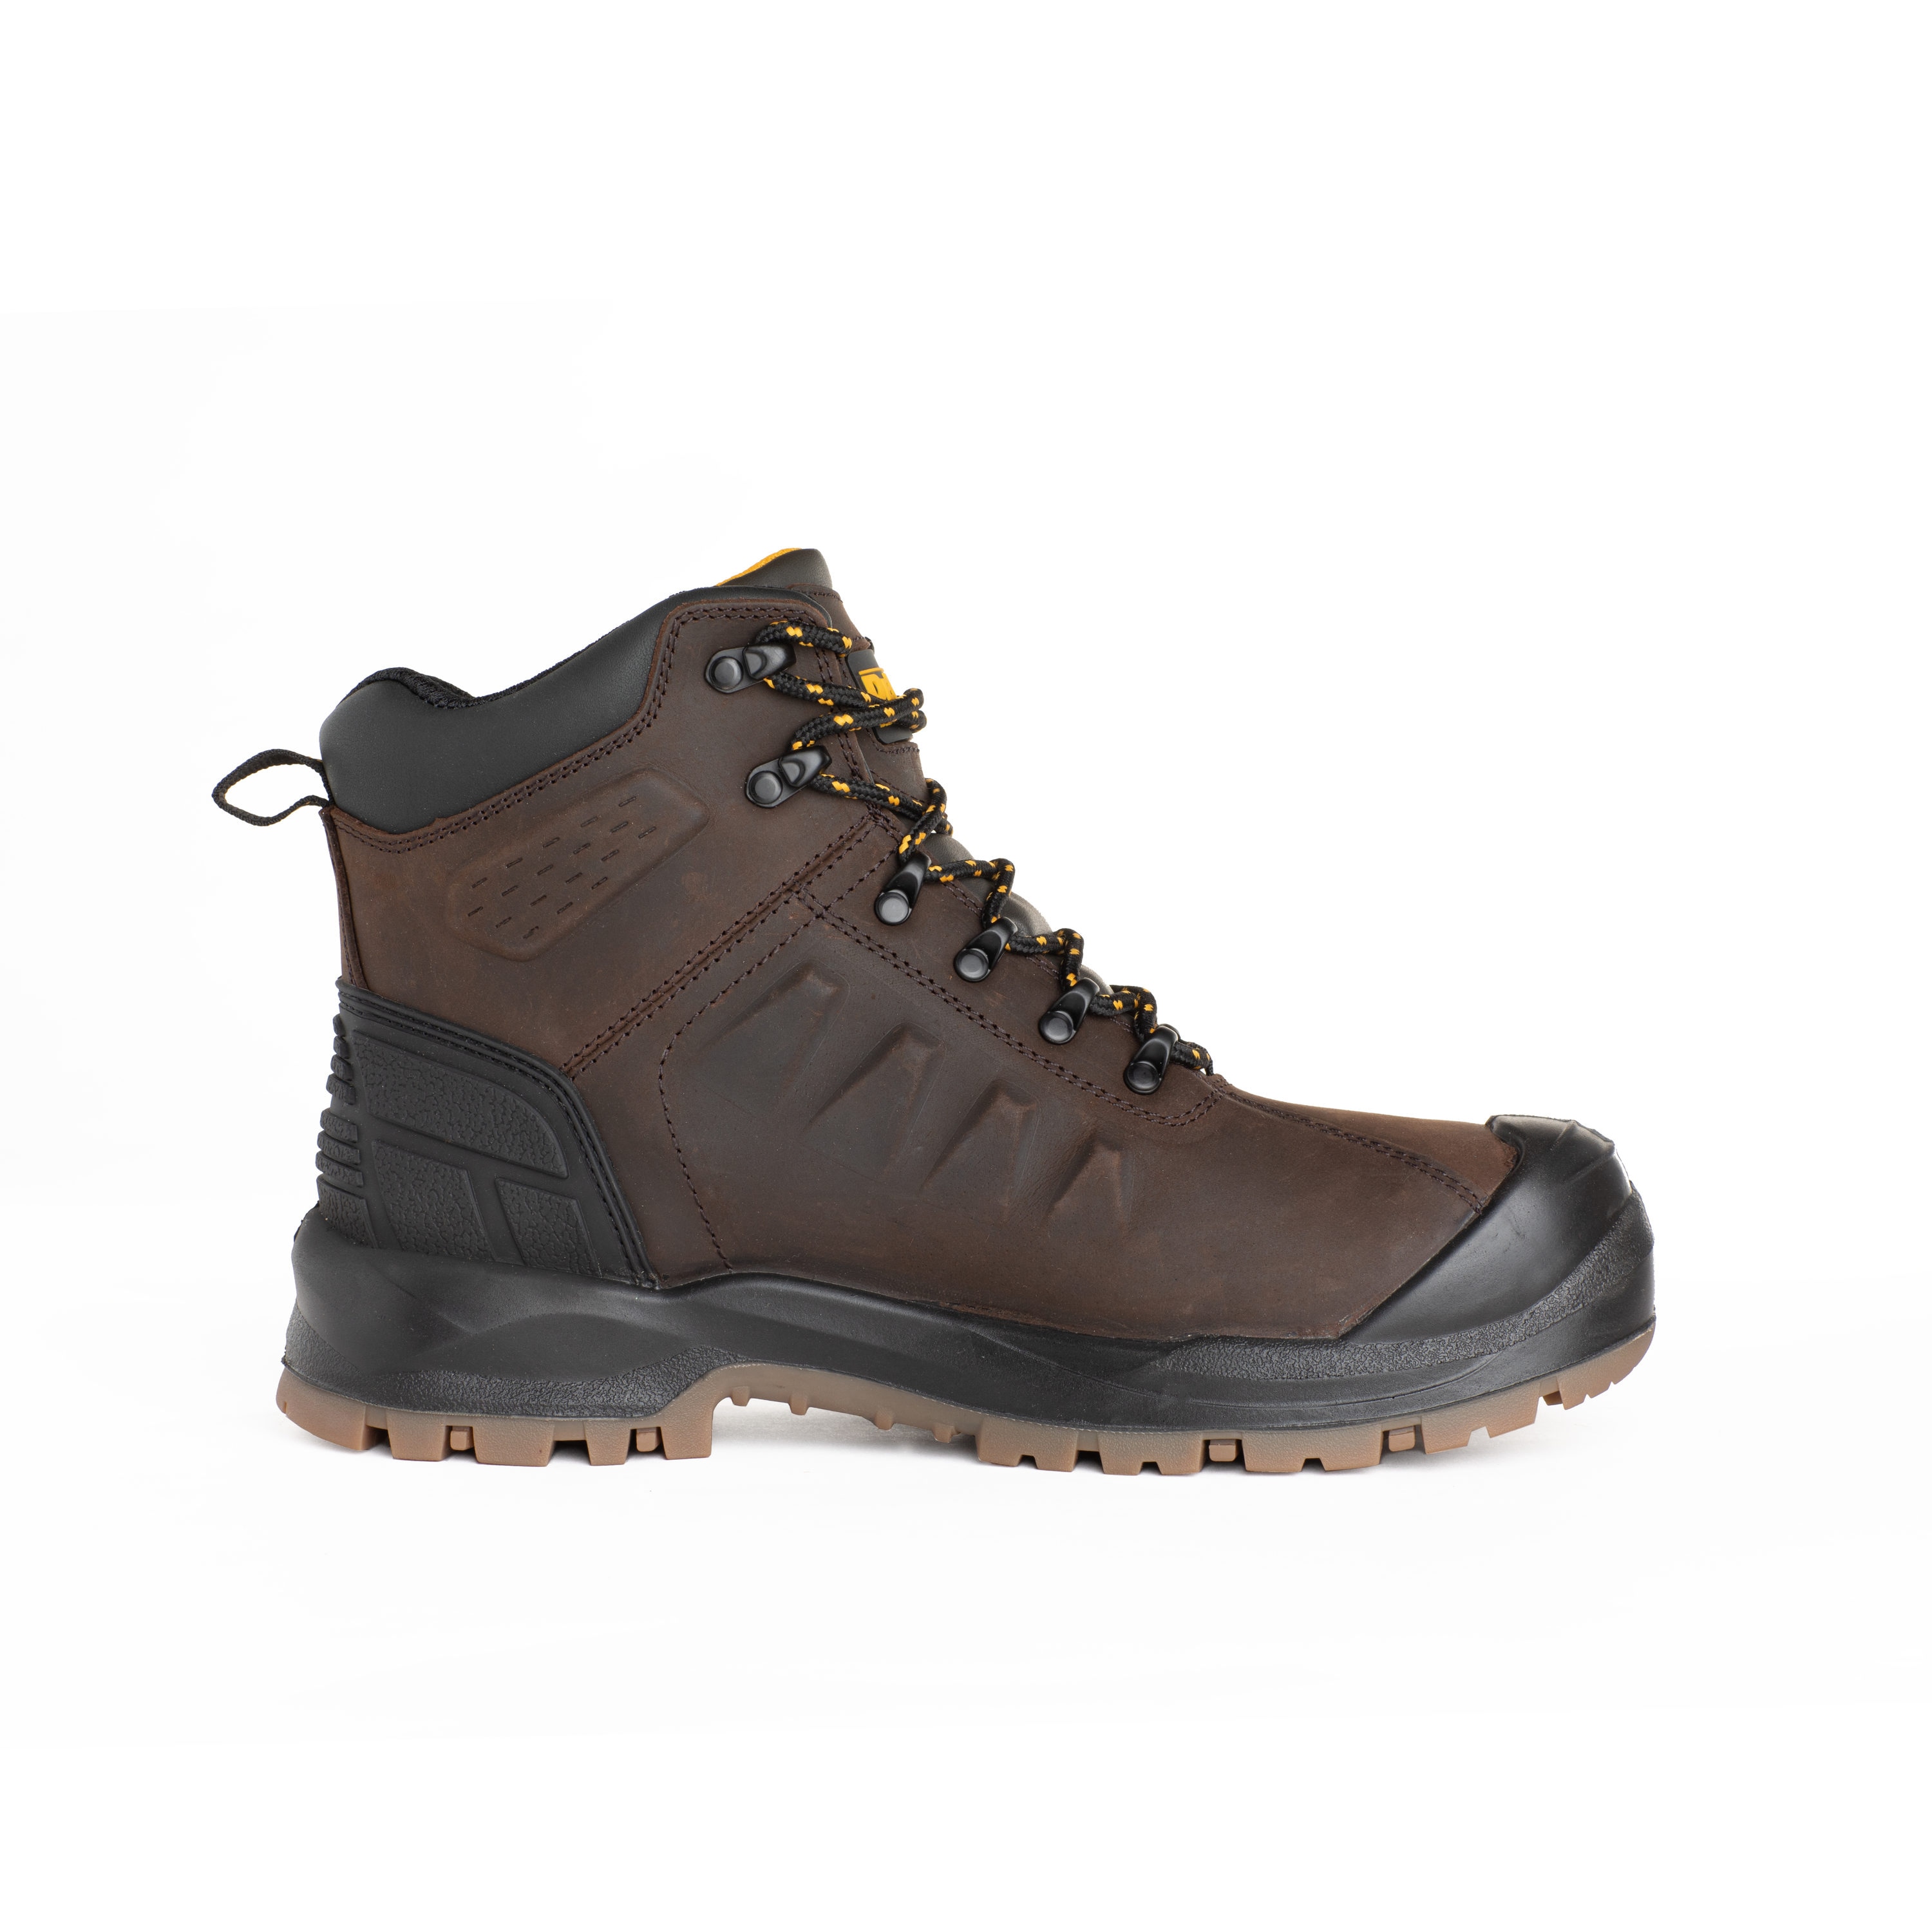 DeWalt Mens Brown Waterproof Steel Toe Work Boots Size: 7 Medium